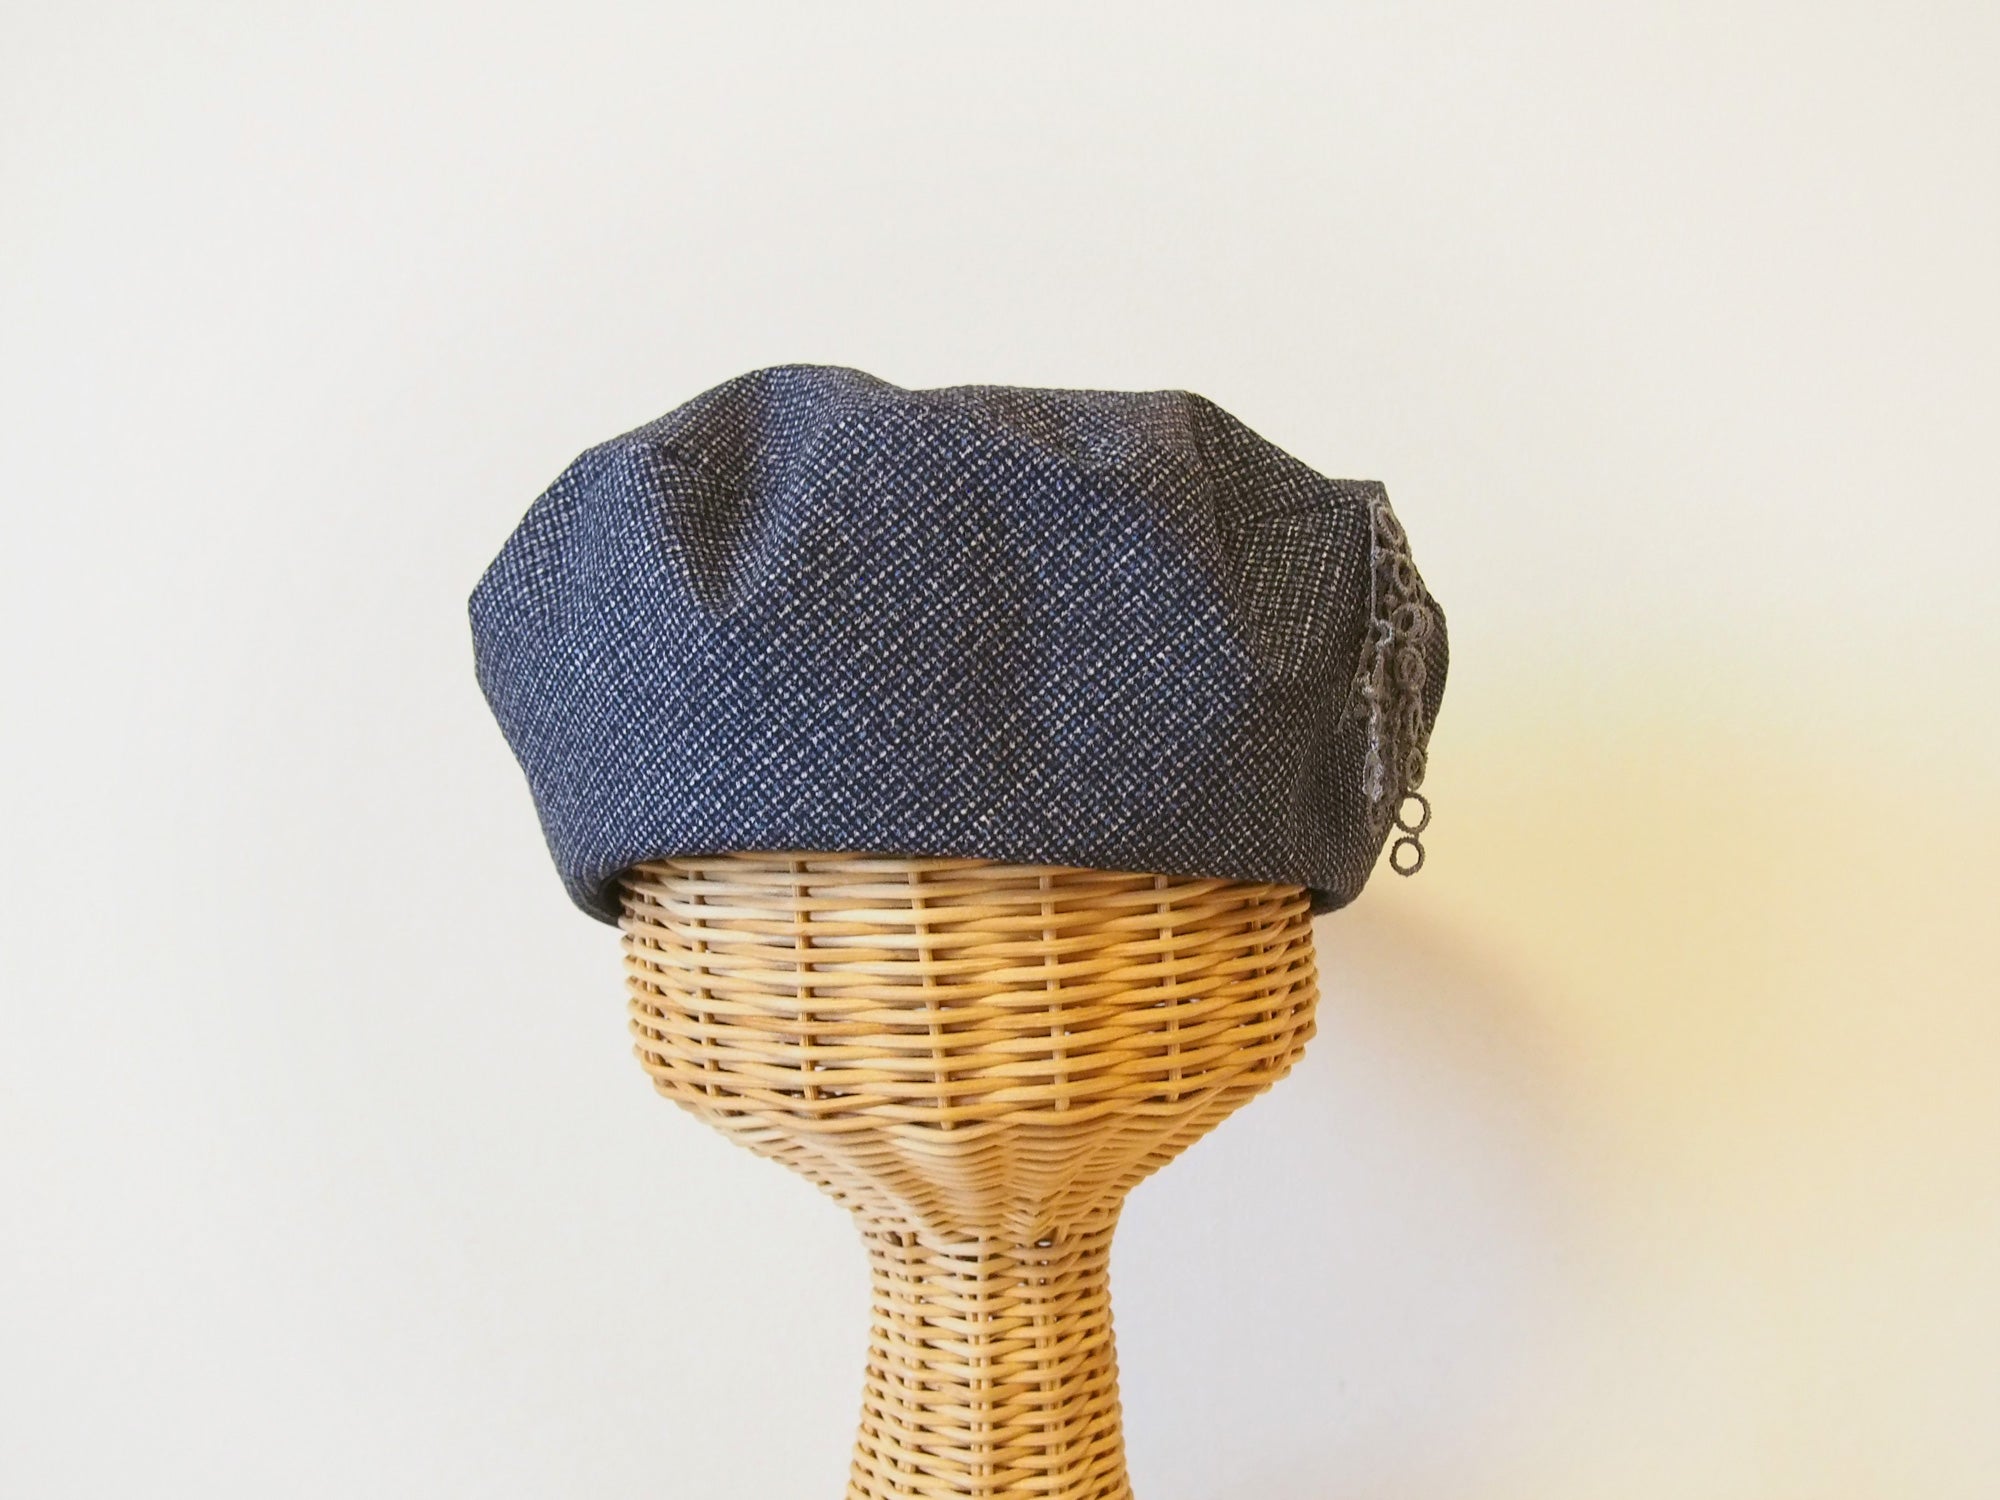 ハンドメイド美術館 アートから生まれるベレー帽のキットご紹介